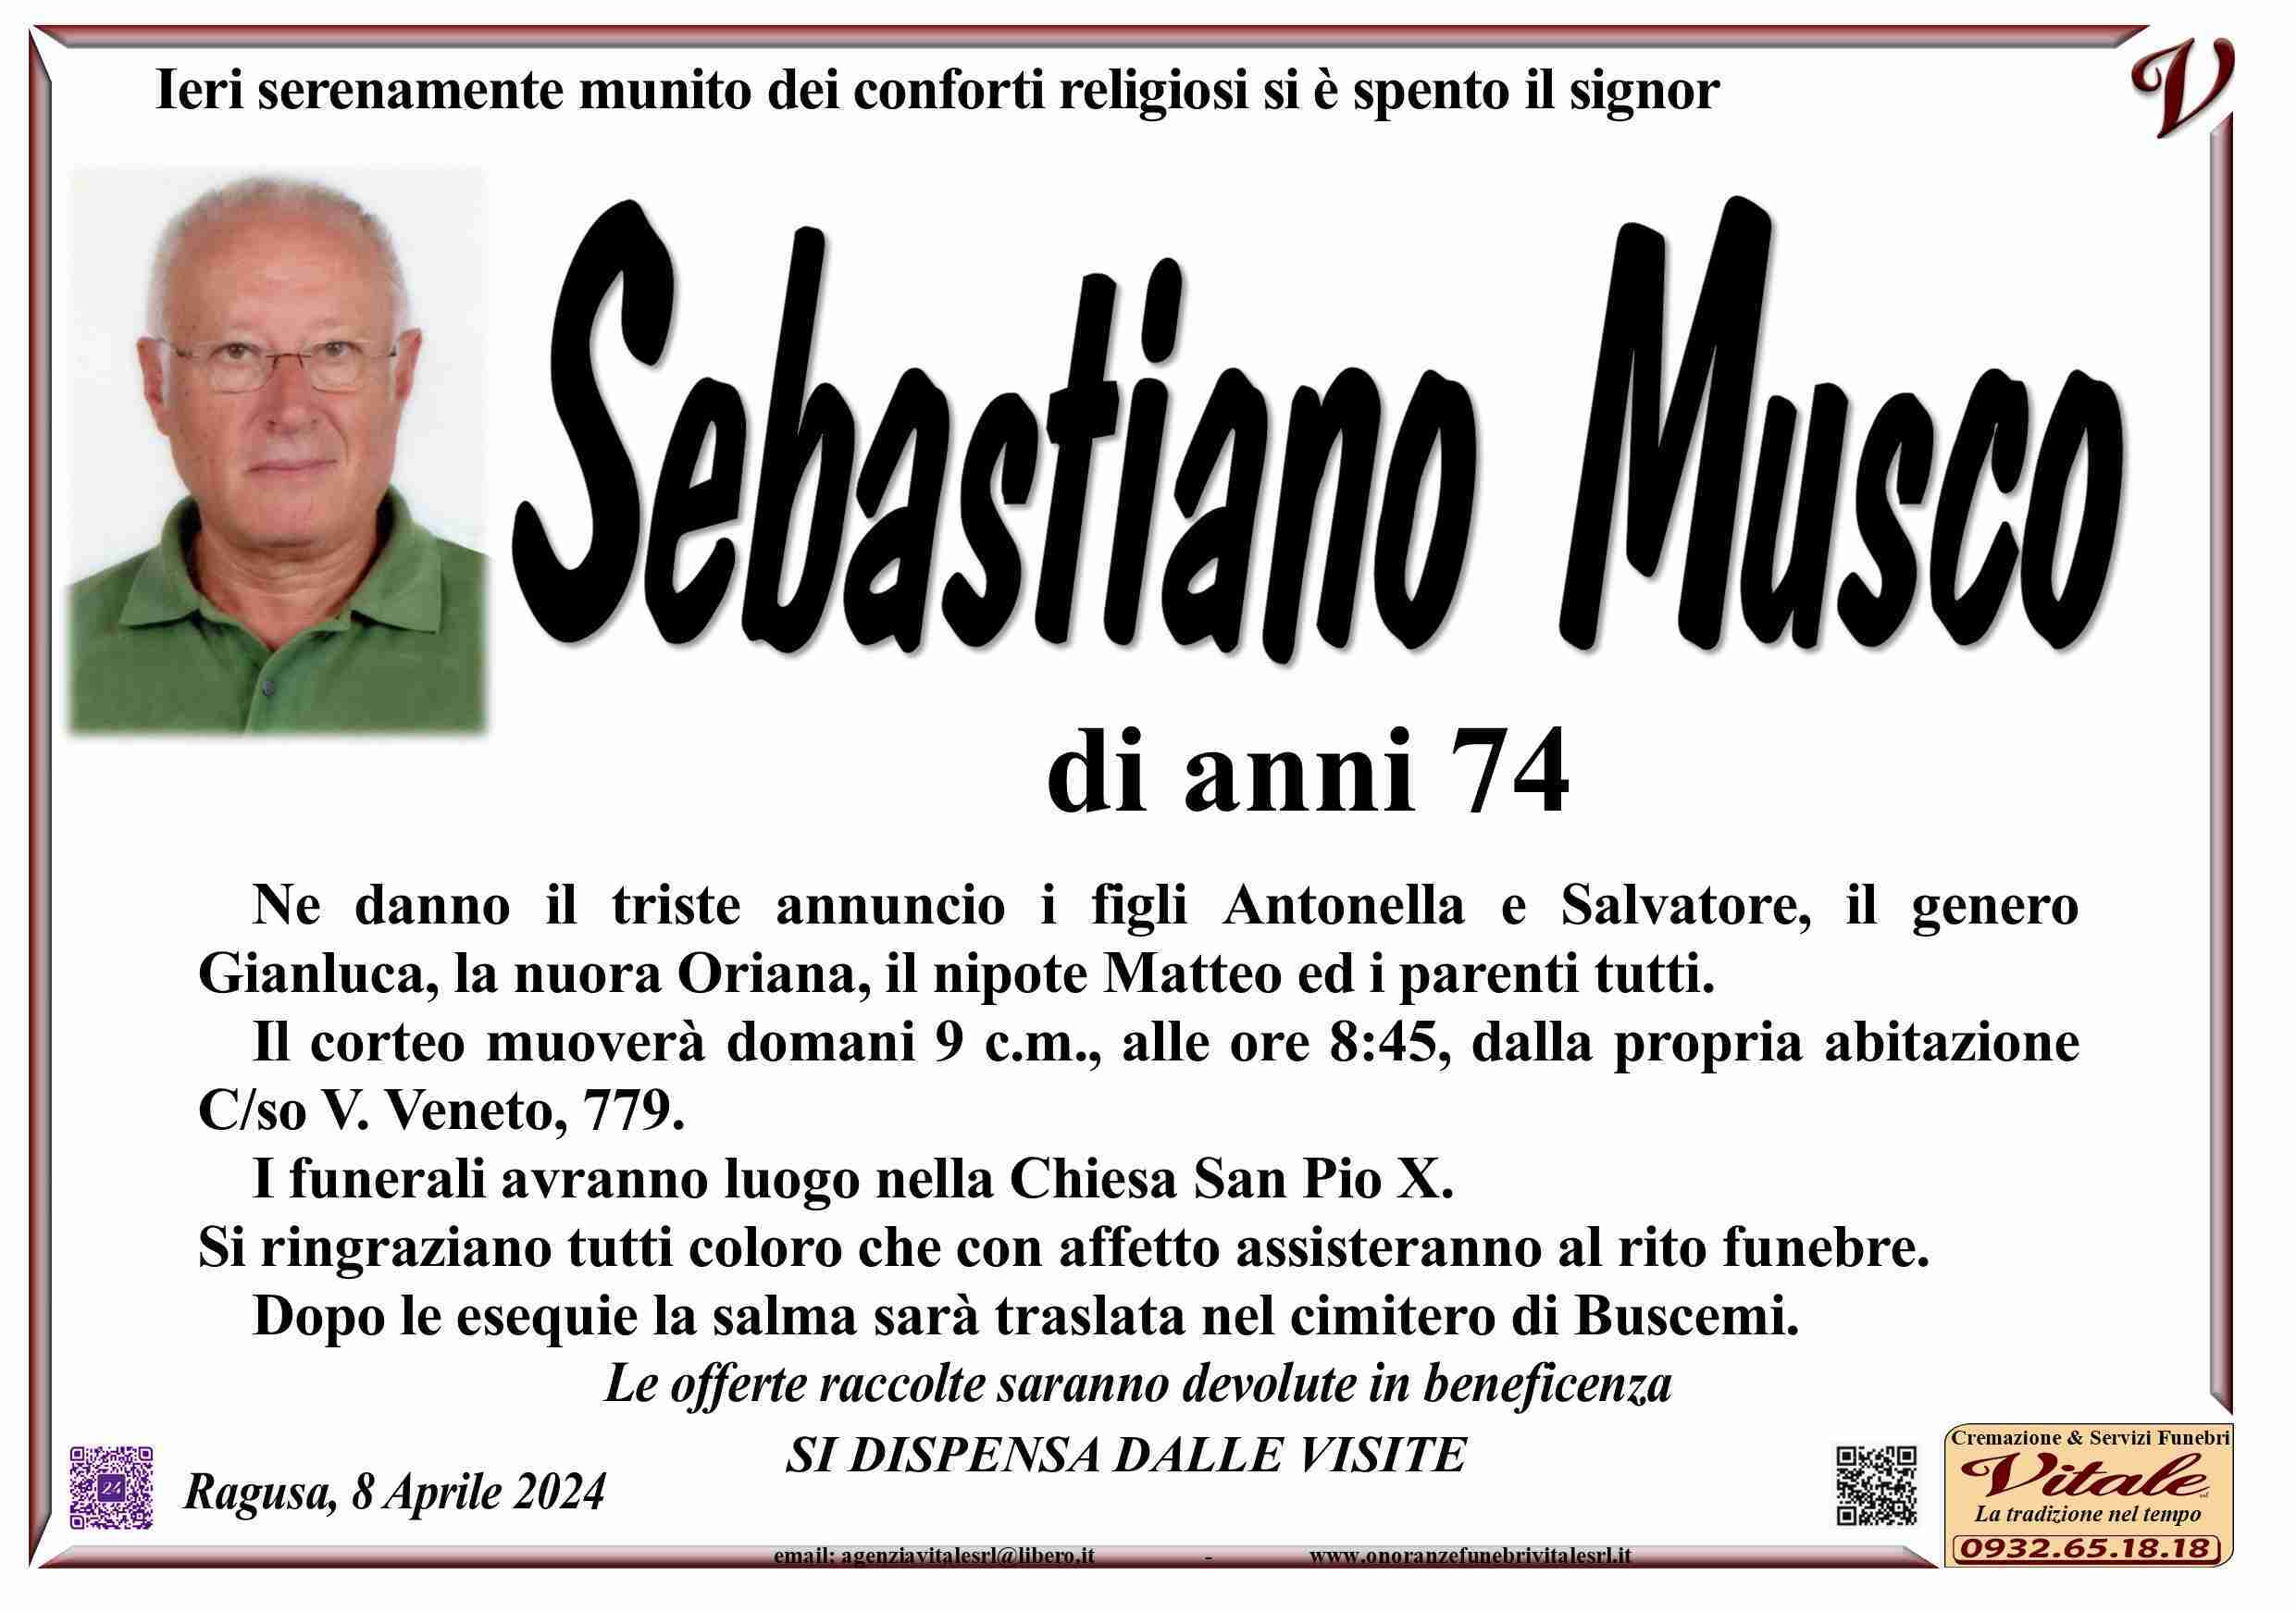 Sebastiano Musco